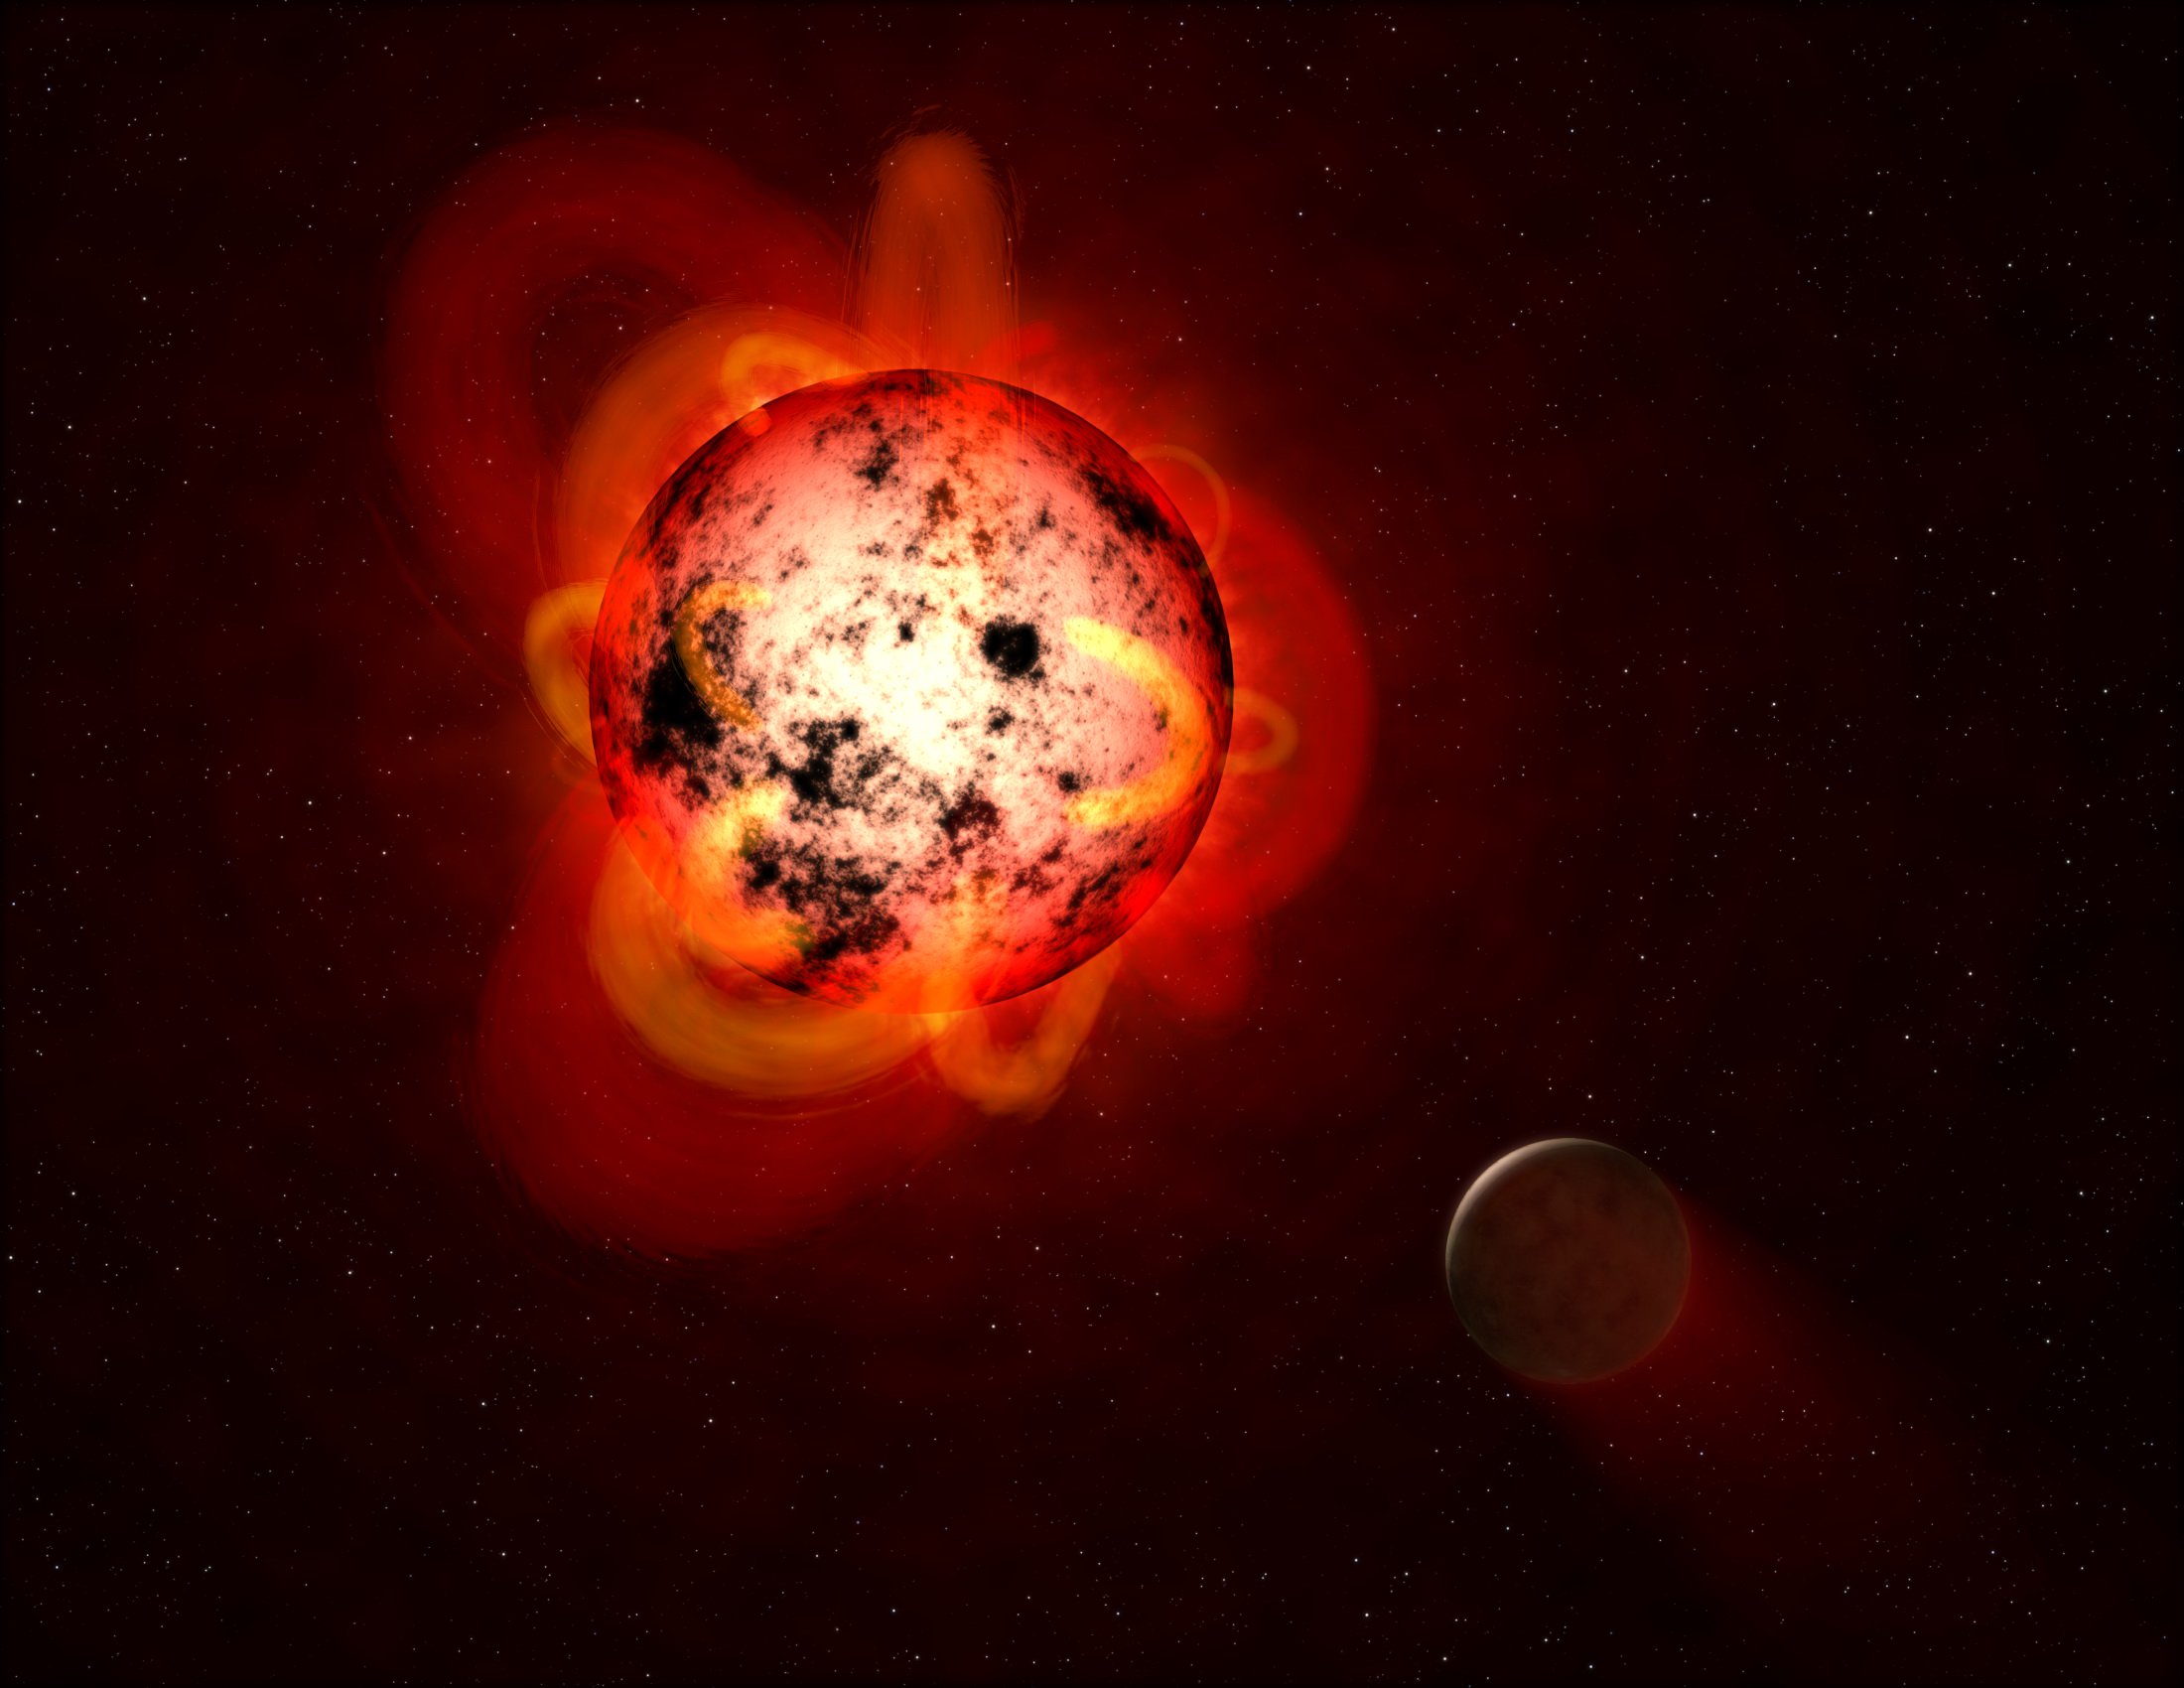 Un autre système stellaire a été stérilisée de toute vie